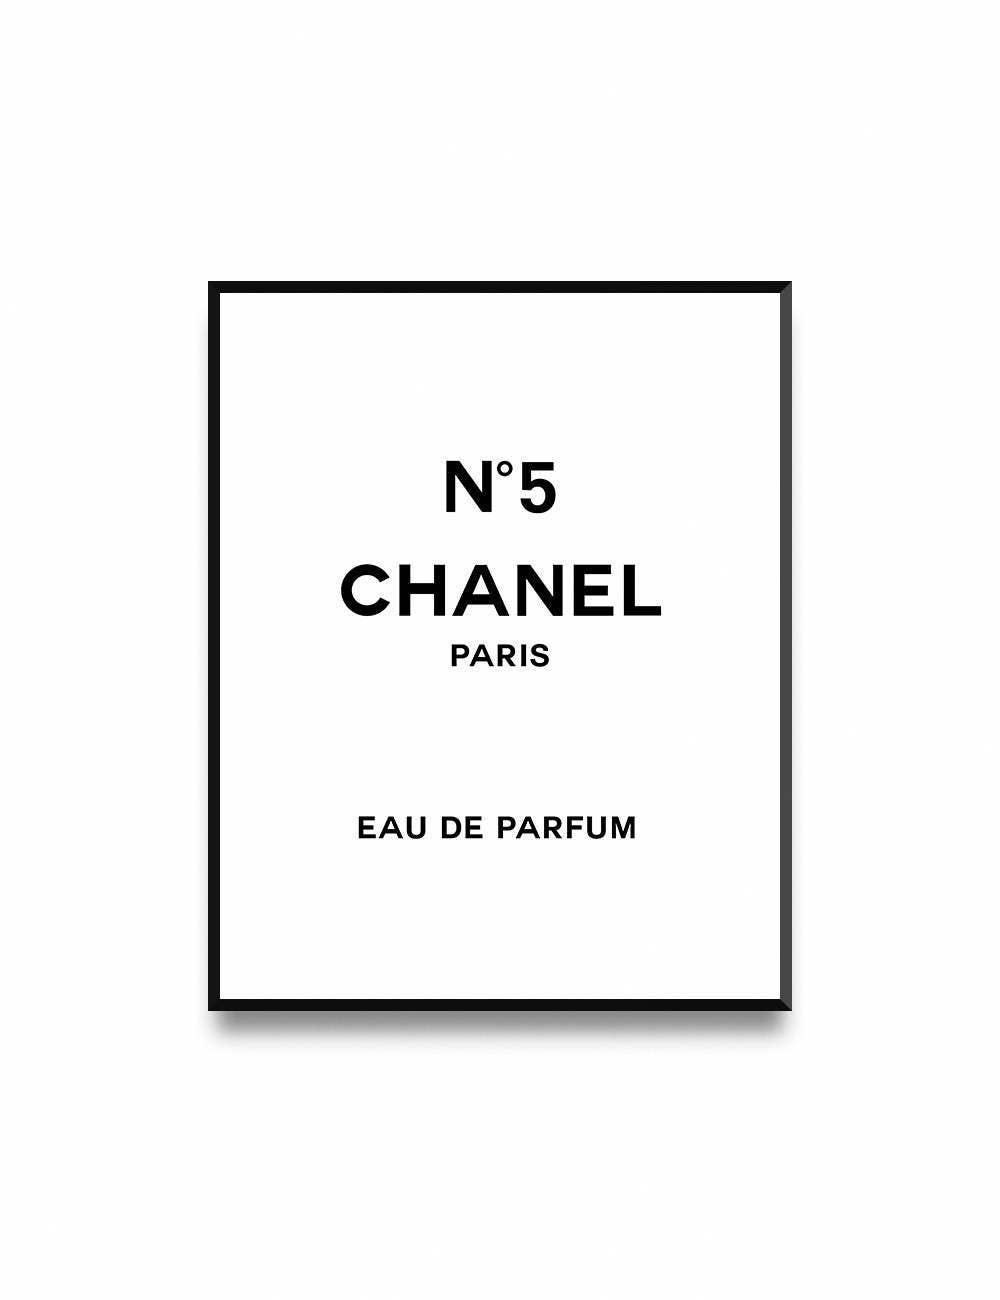 Impresion De Chanel Arte De Moda Logotipo De Chanel Etsy